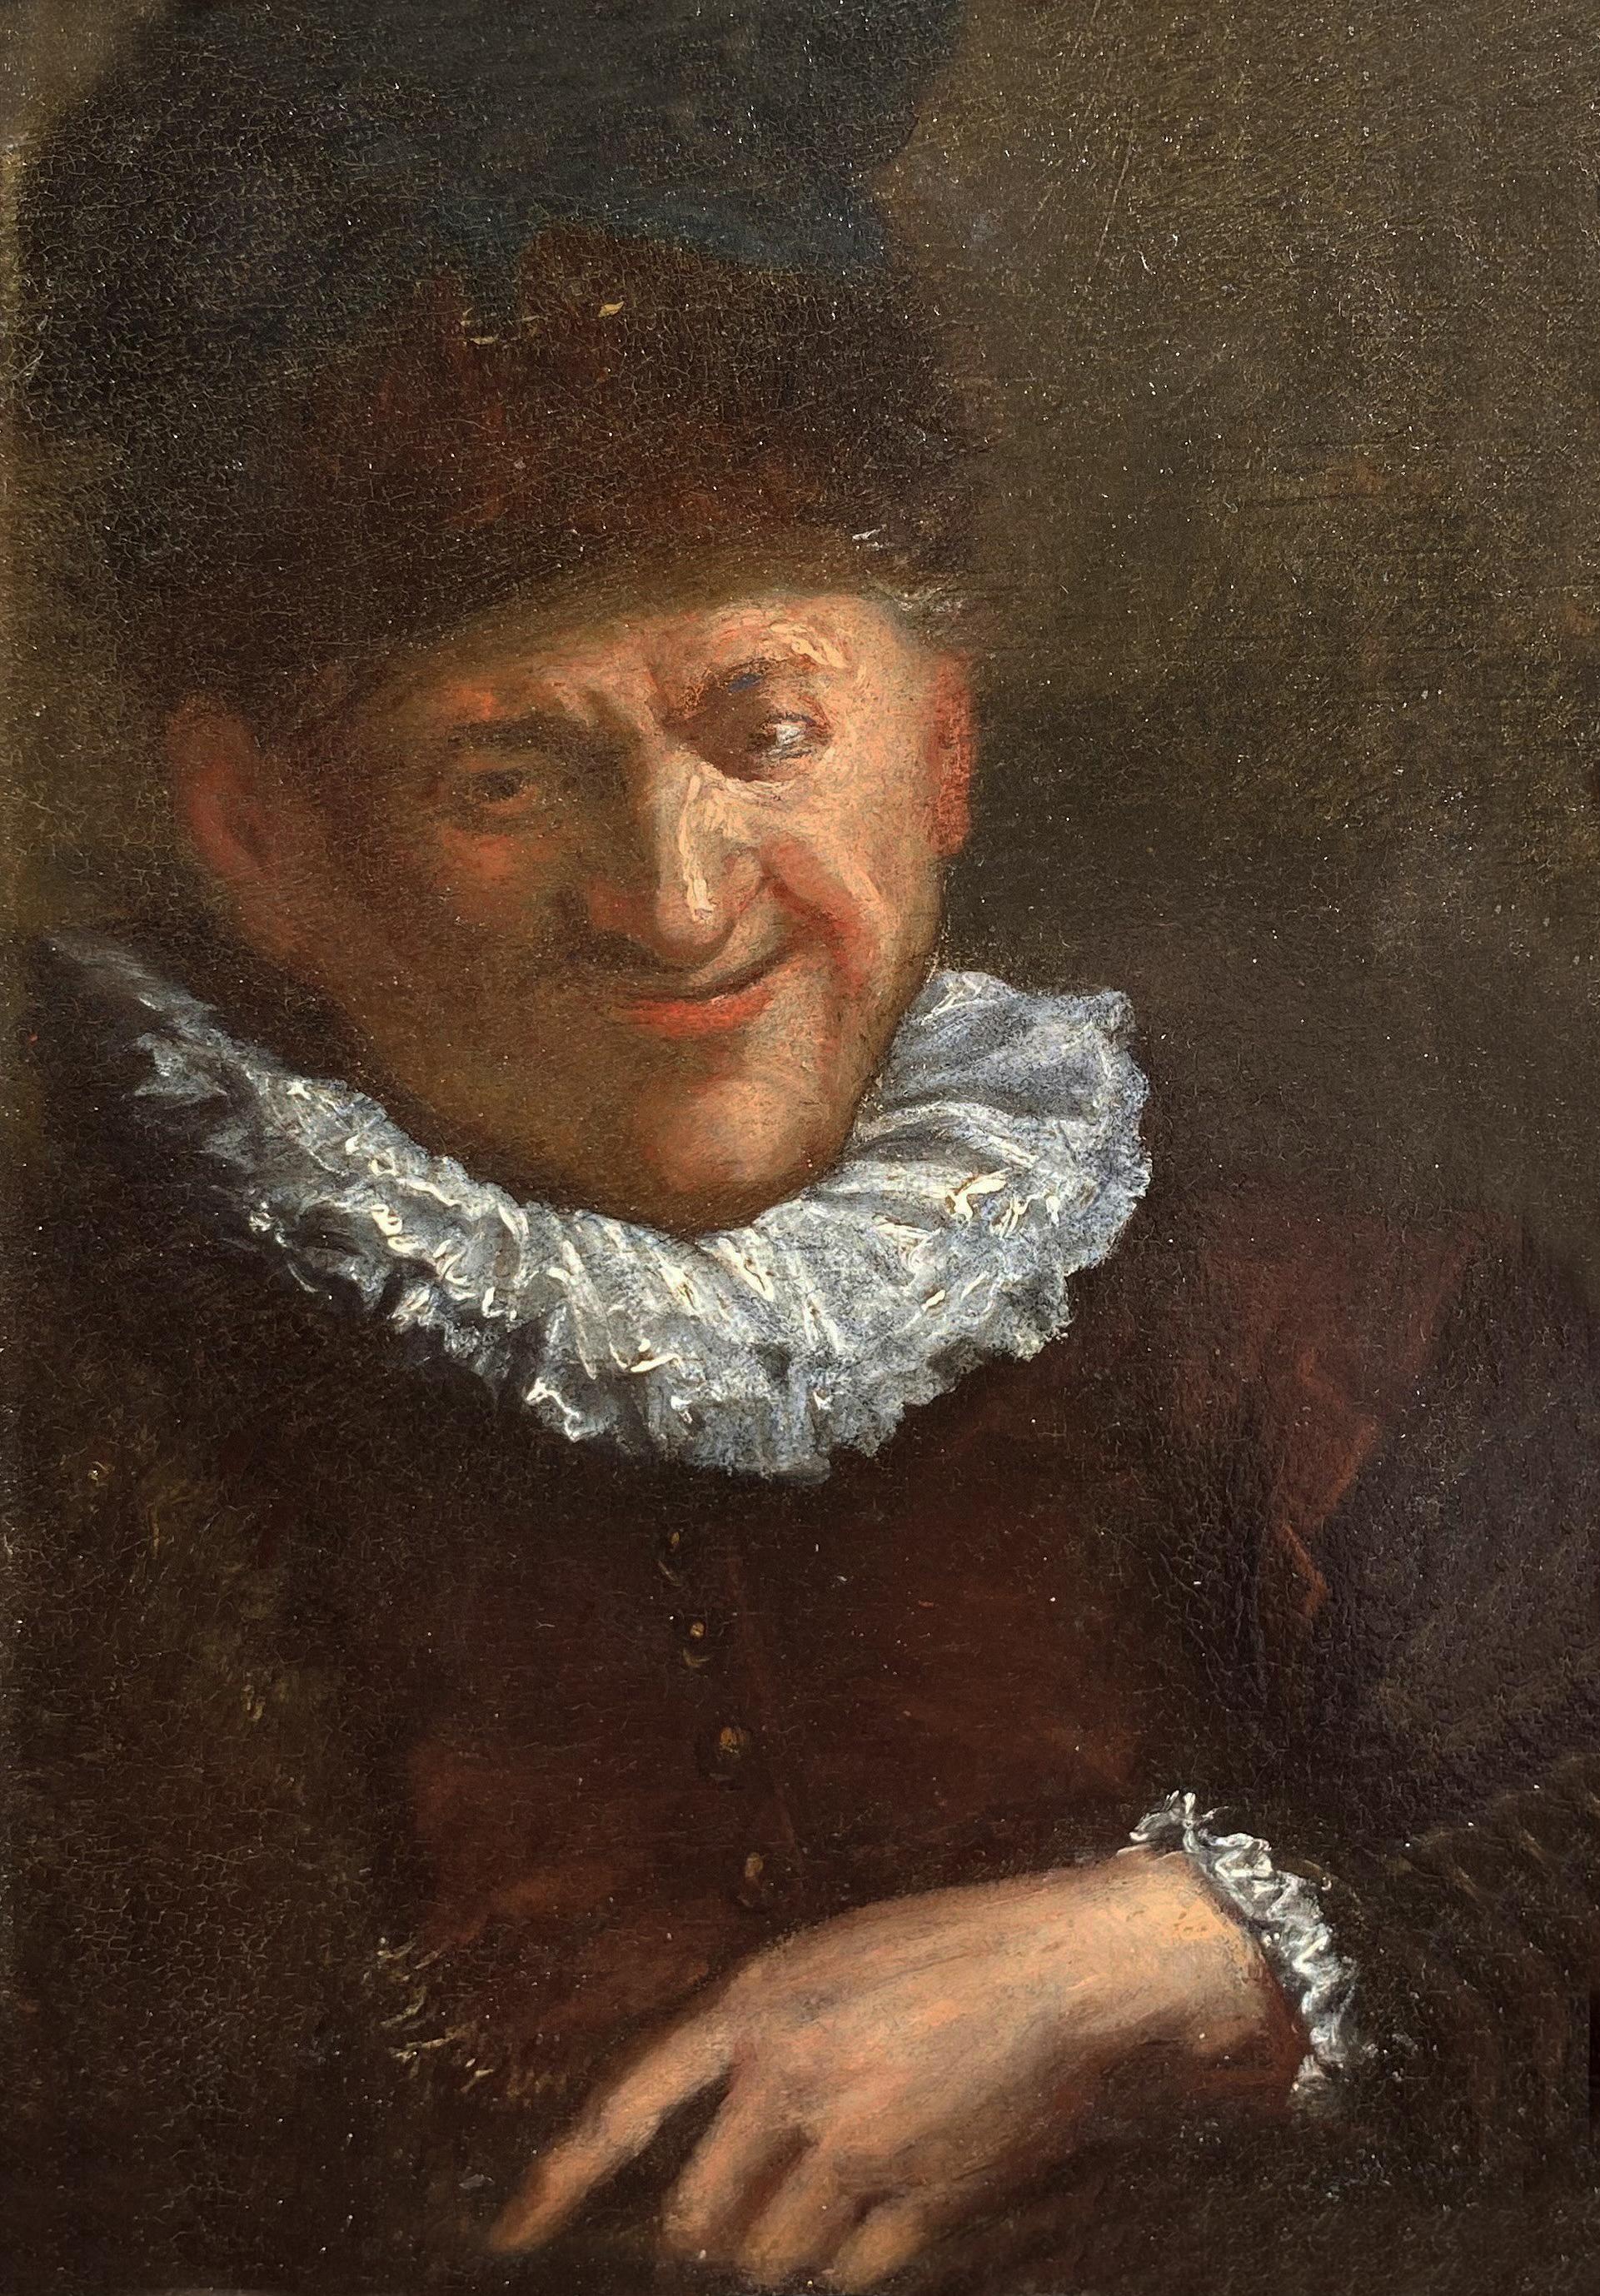 Cornelis Dusart Portrait Painting - Portrait of a Man, 17th Century Dutch Oil on Panel Portrait